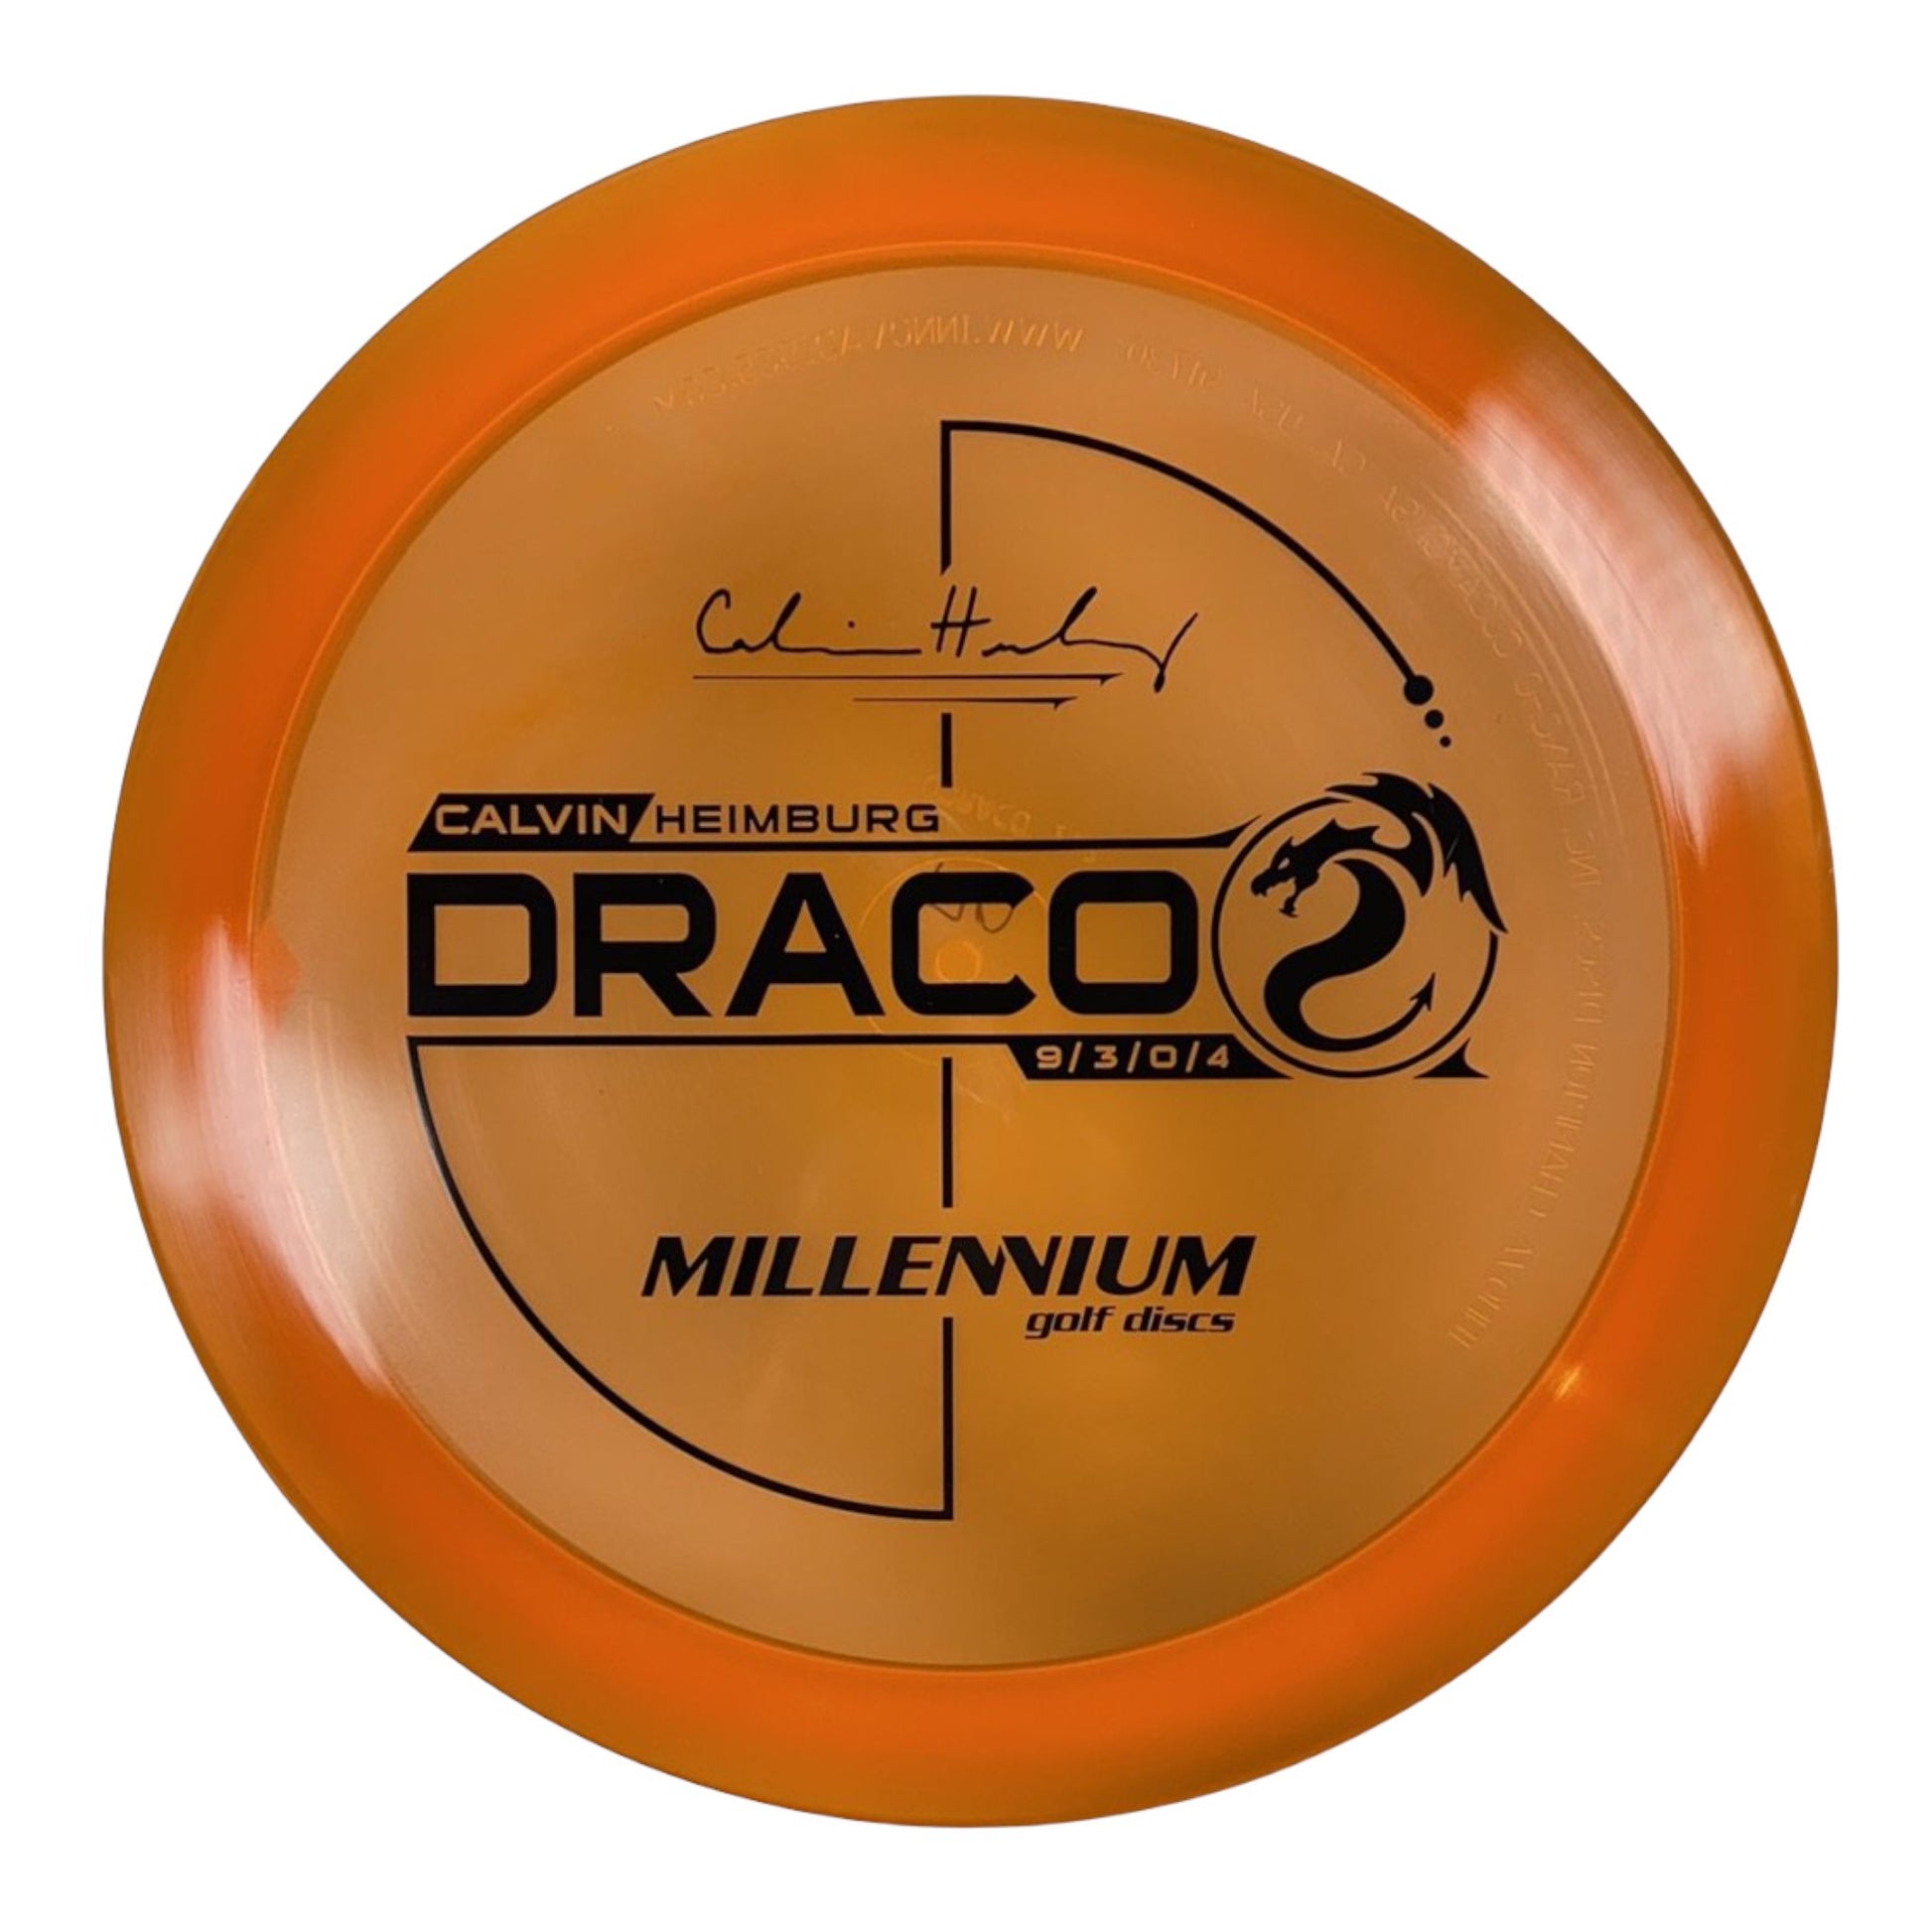 Millennium Golf Discs Draco | Quantum | Orange/Black 170-171g (Calvin Heimburg) Disc Golf